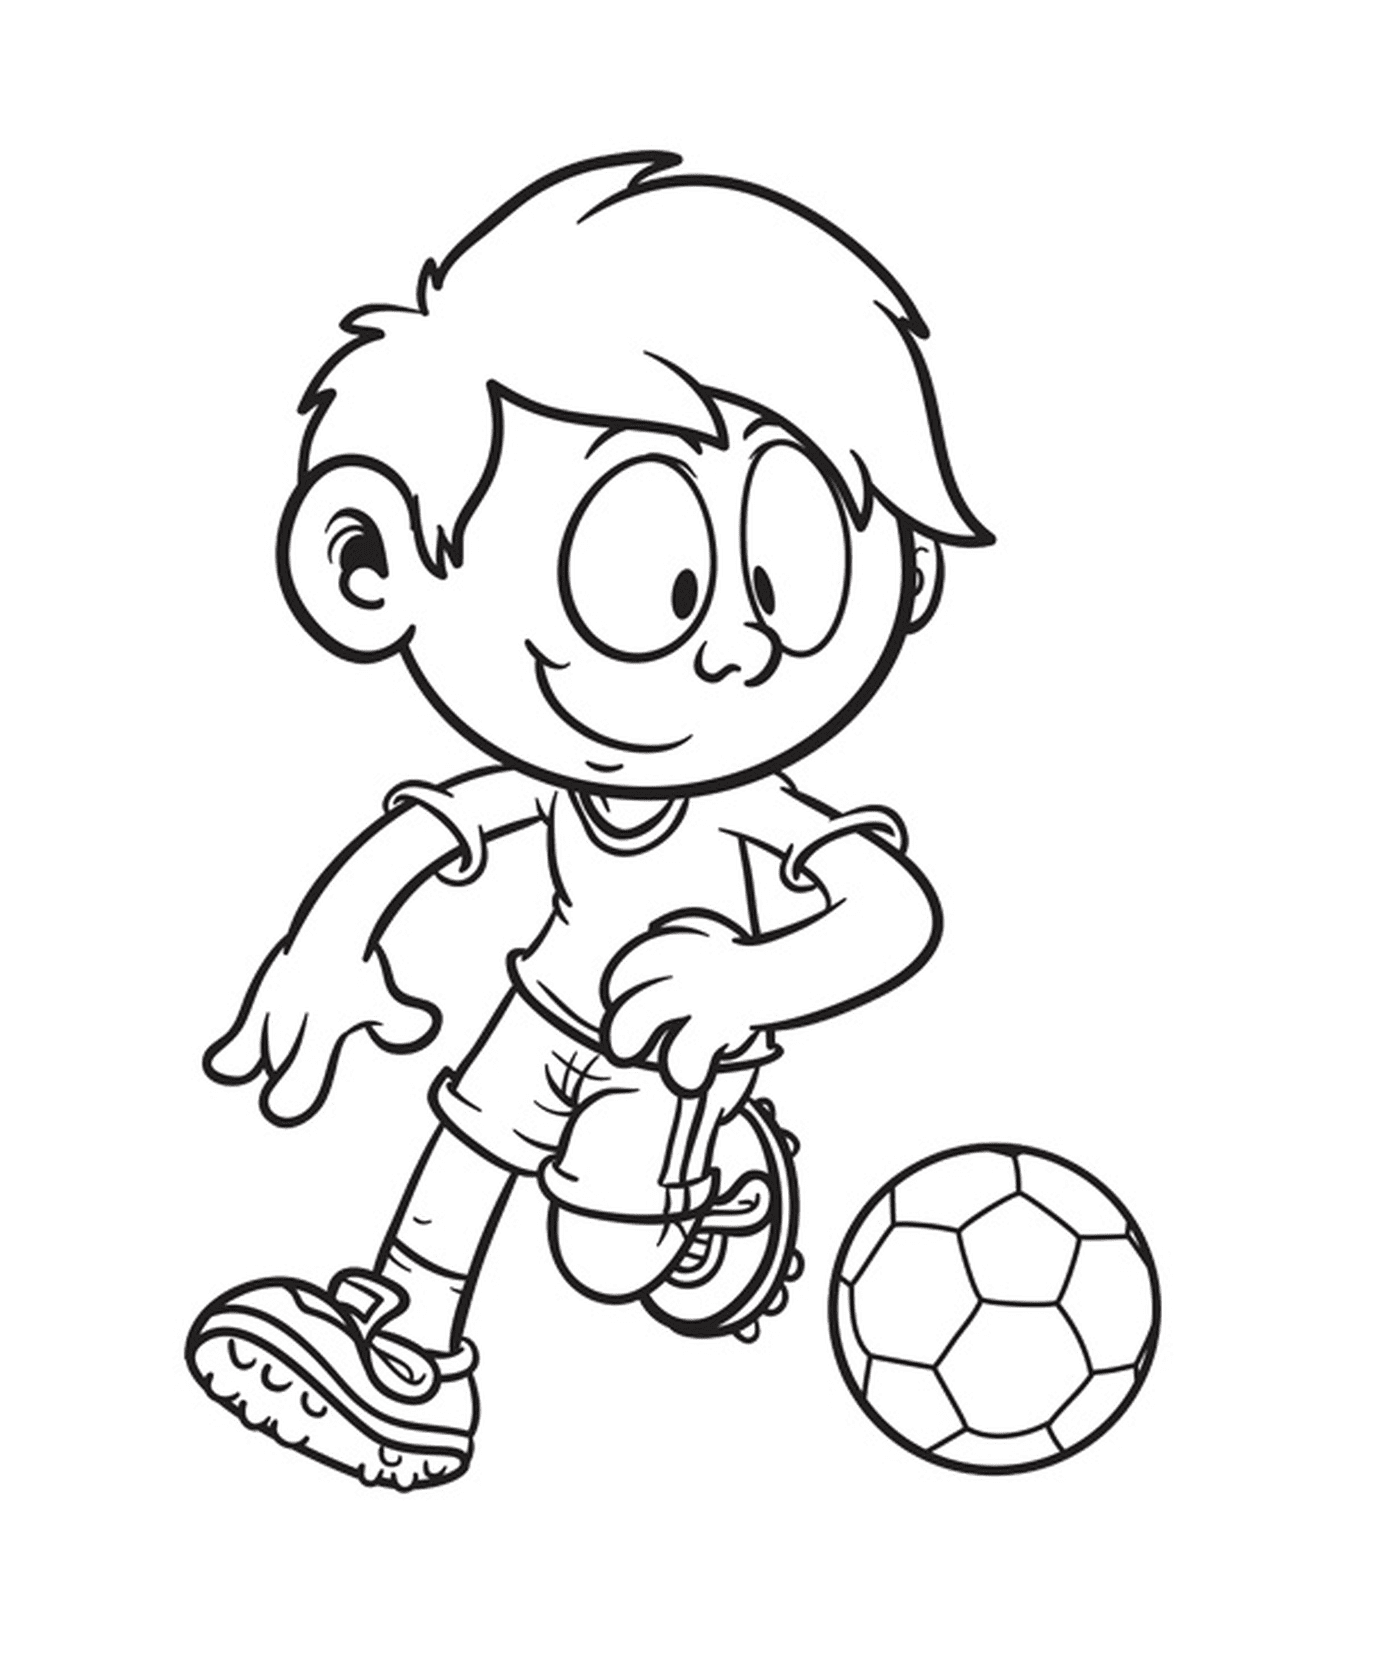   Garçon de 10 ans jouant au foot 